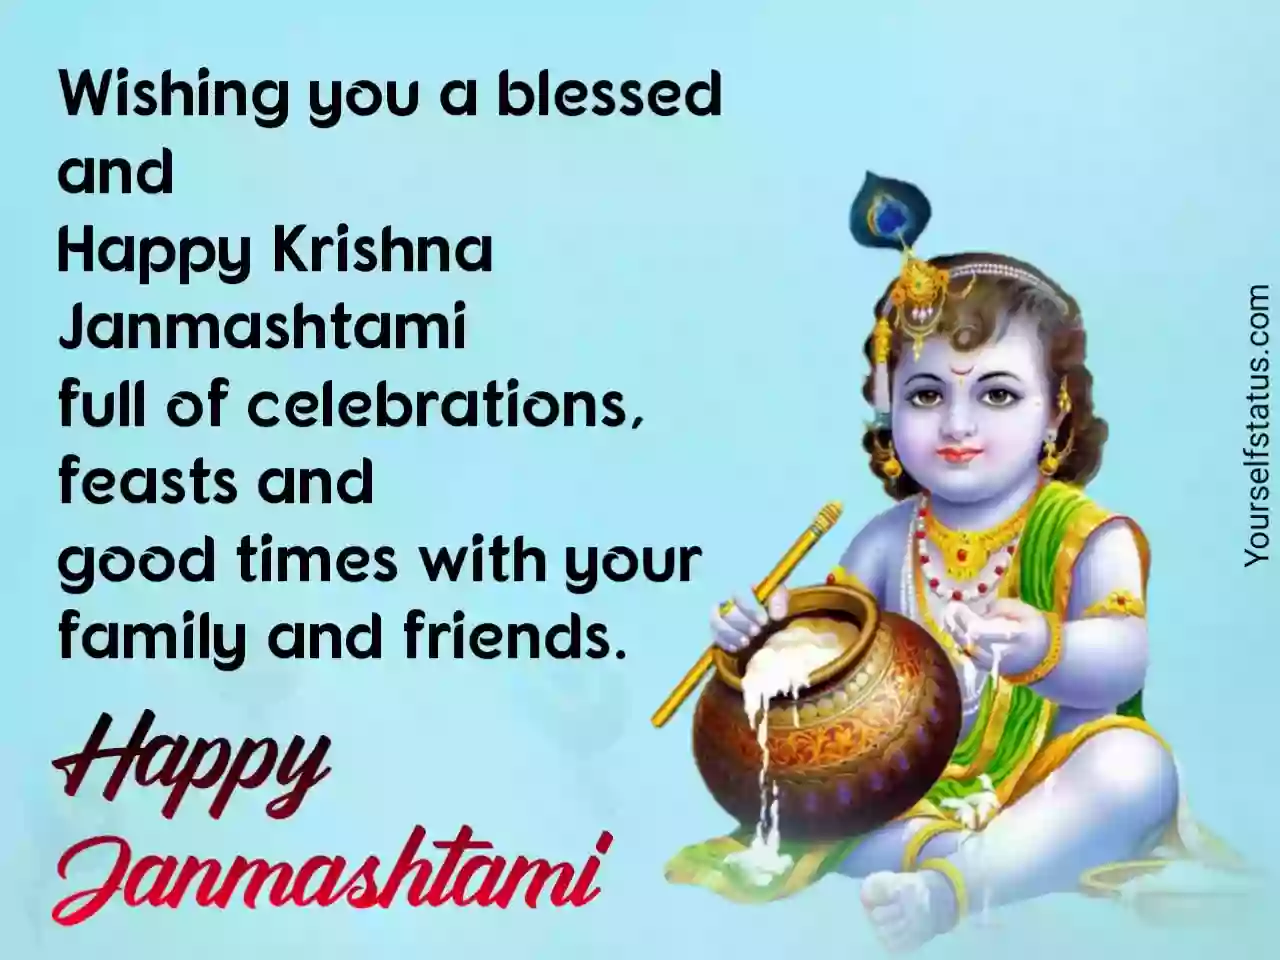 Krishna Janmashtami status in english